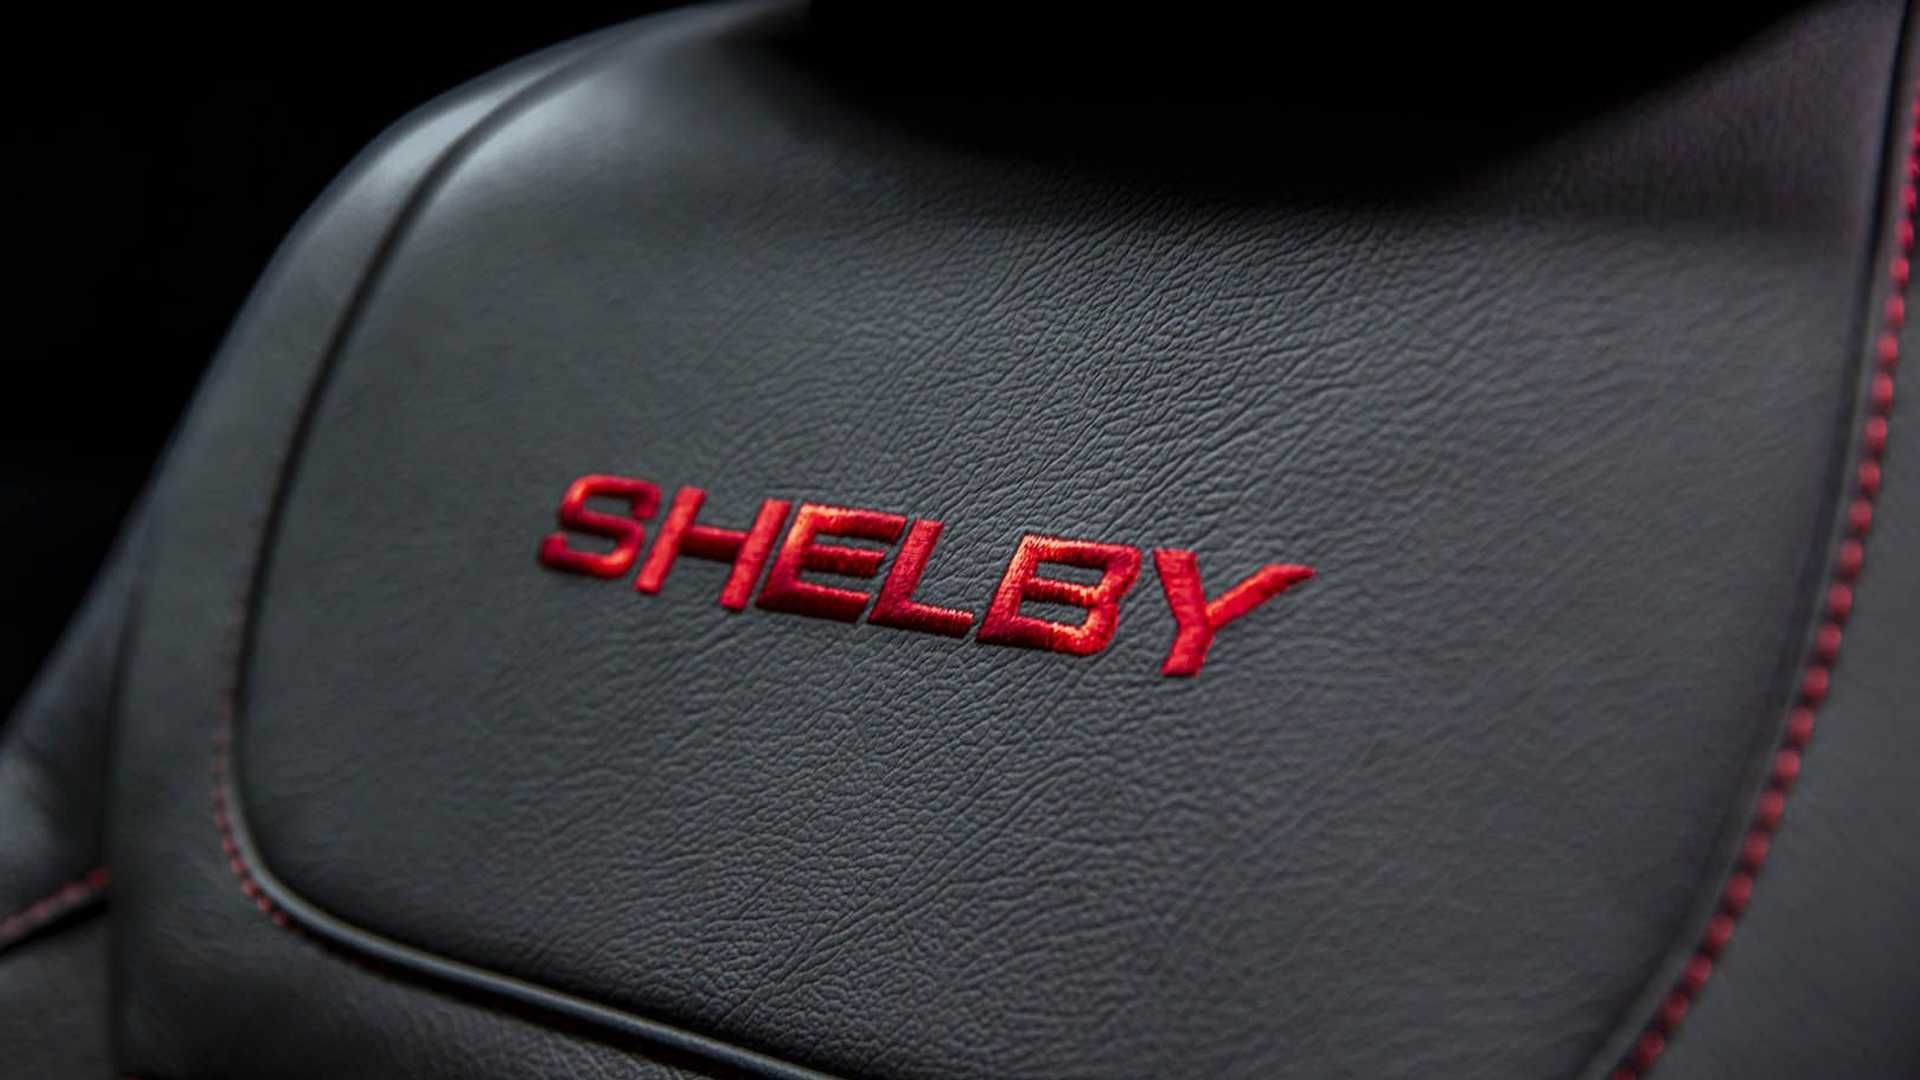 پشتی صندلی وانت پیکاپ شلبی اف 150 / 2021 Shelby F-150 مبتنی بر فورد / Ford